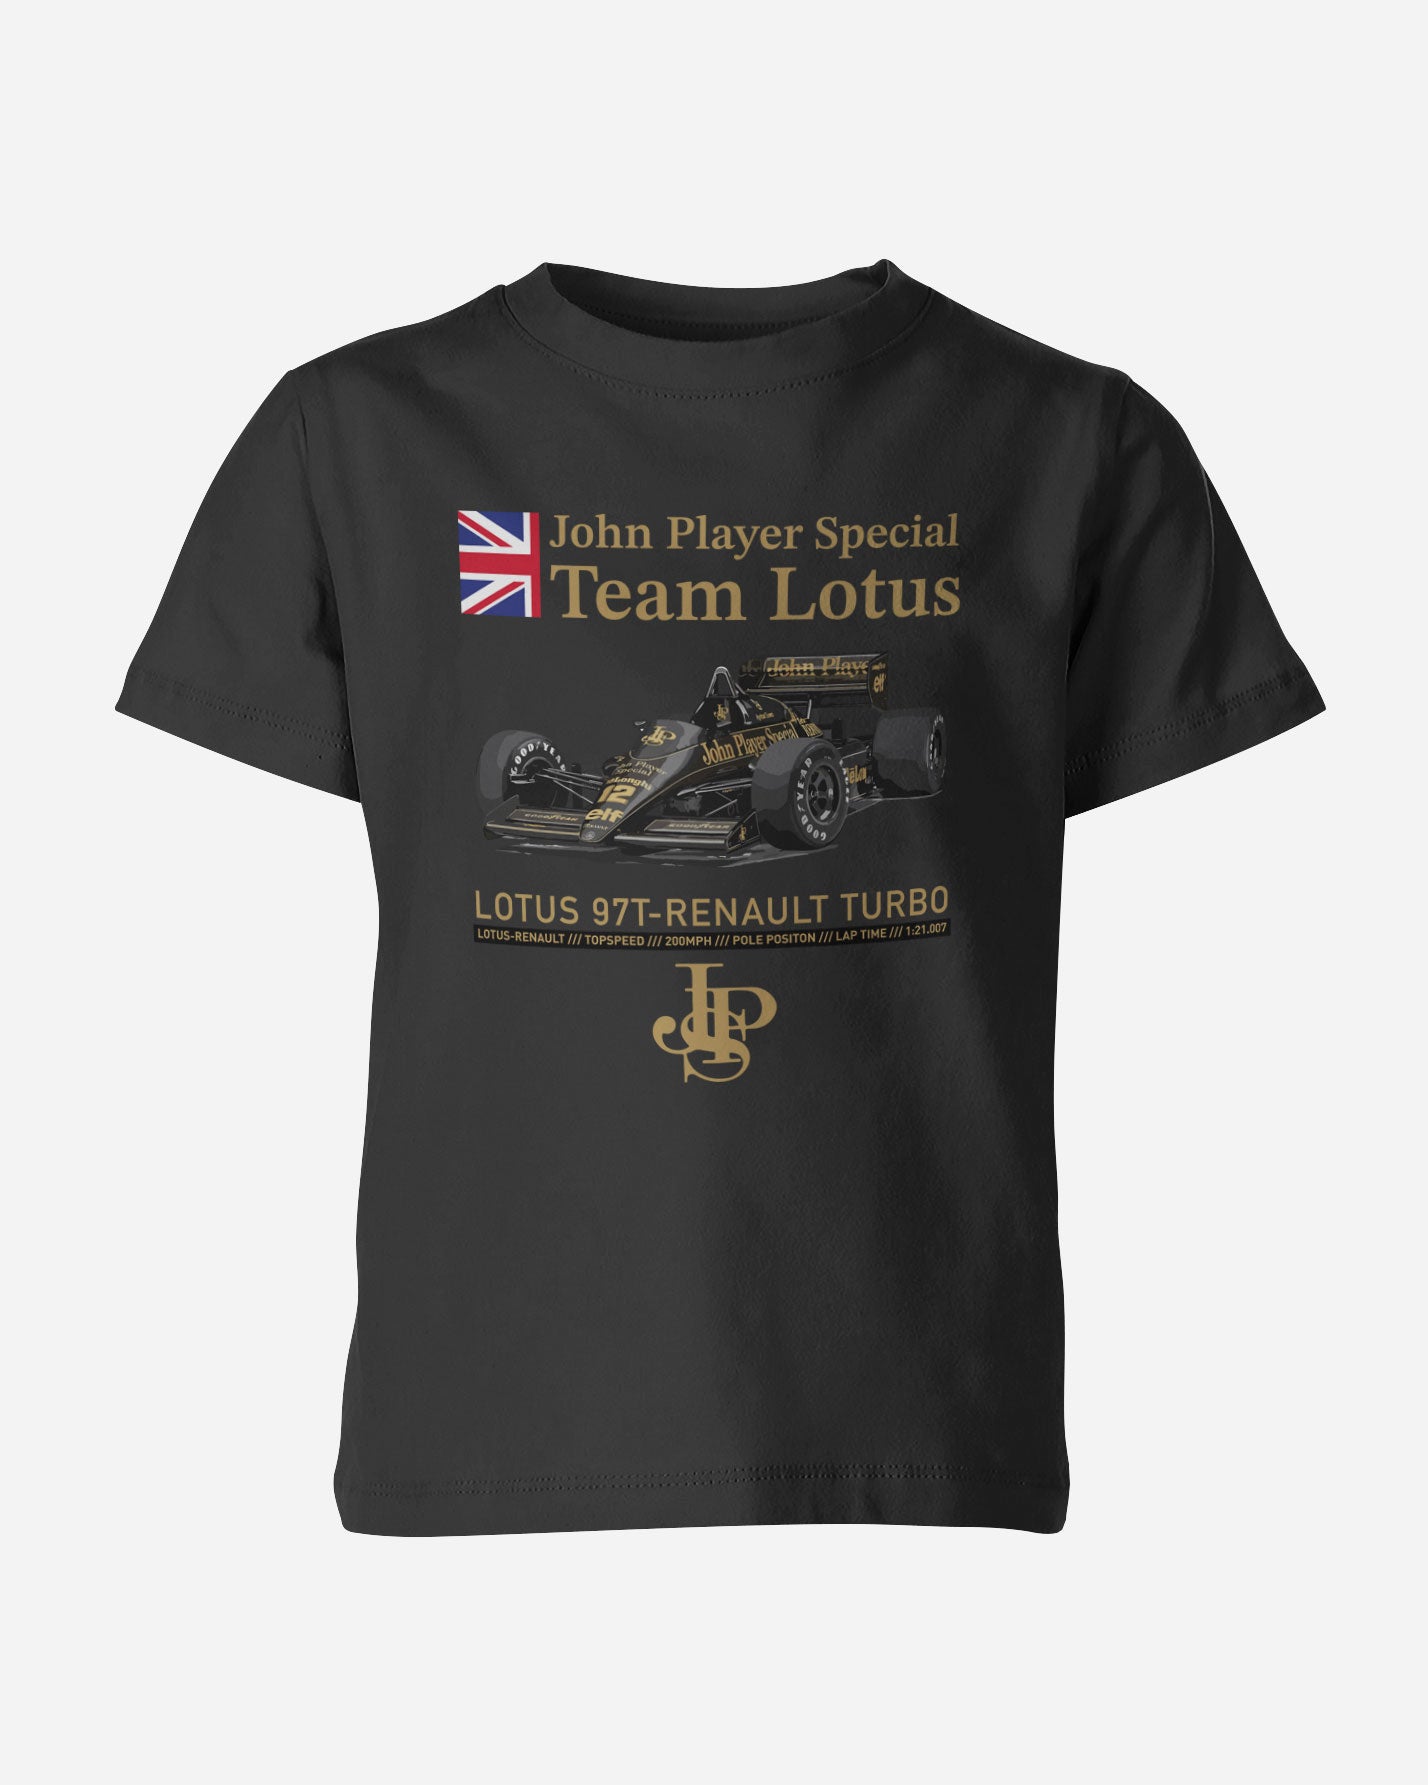 Camiseta Infantil John Player Special - Team Lotus - Lotus 97T